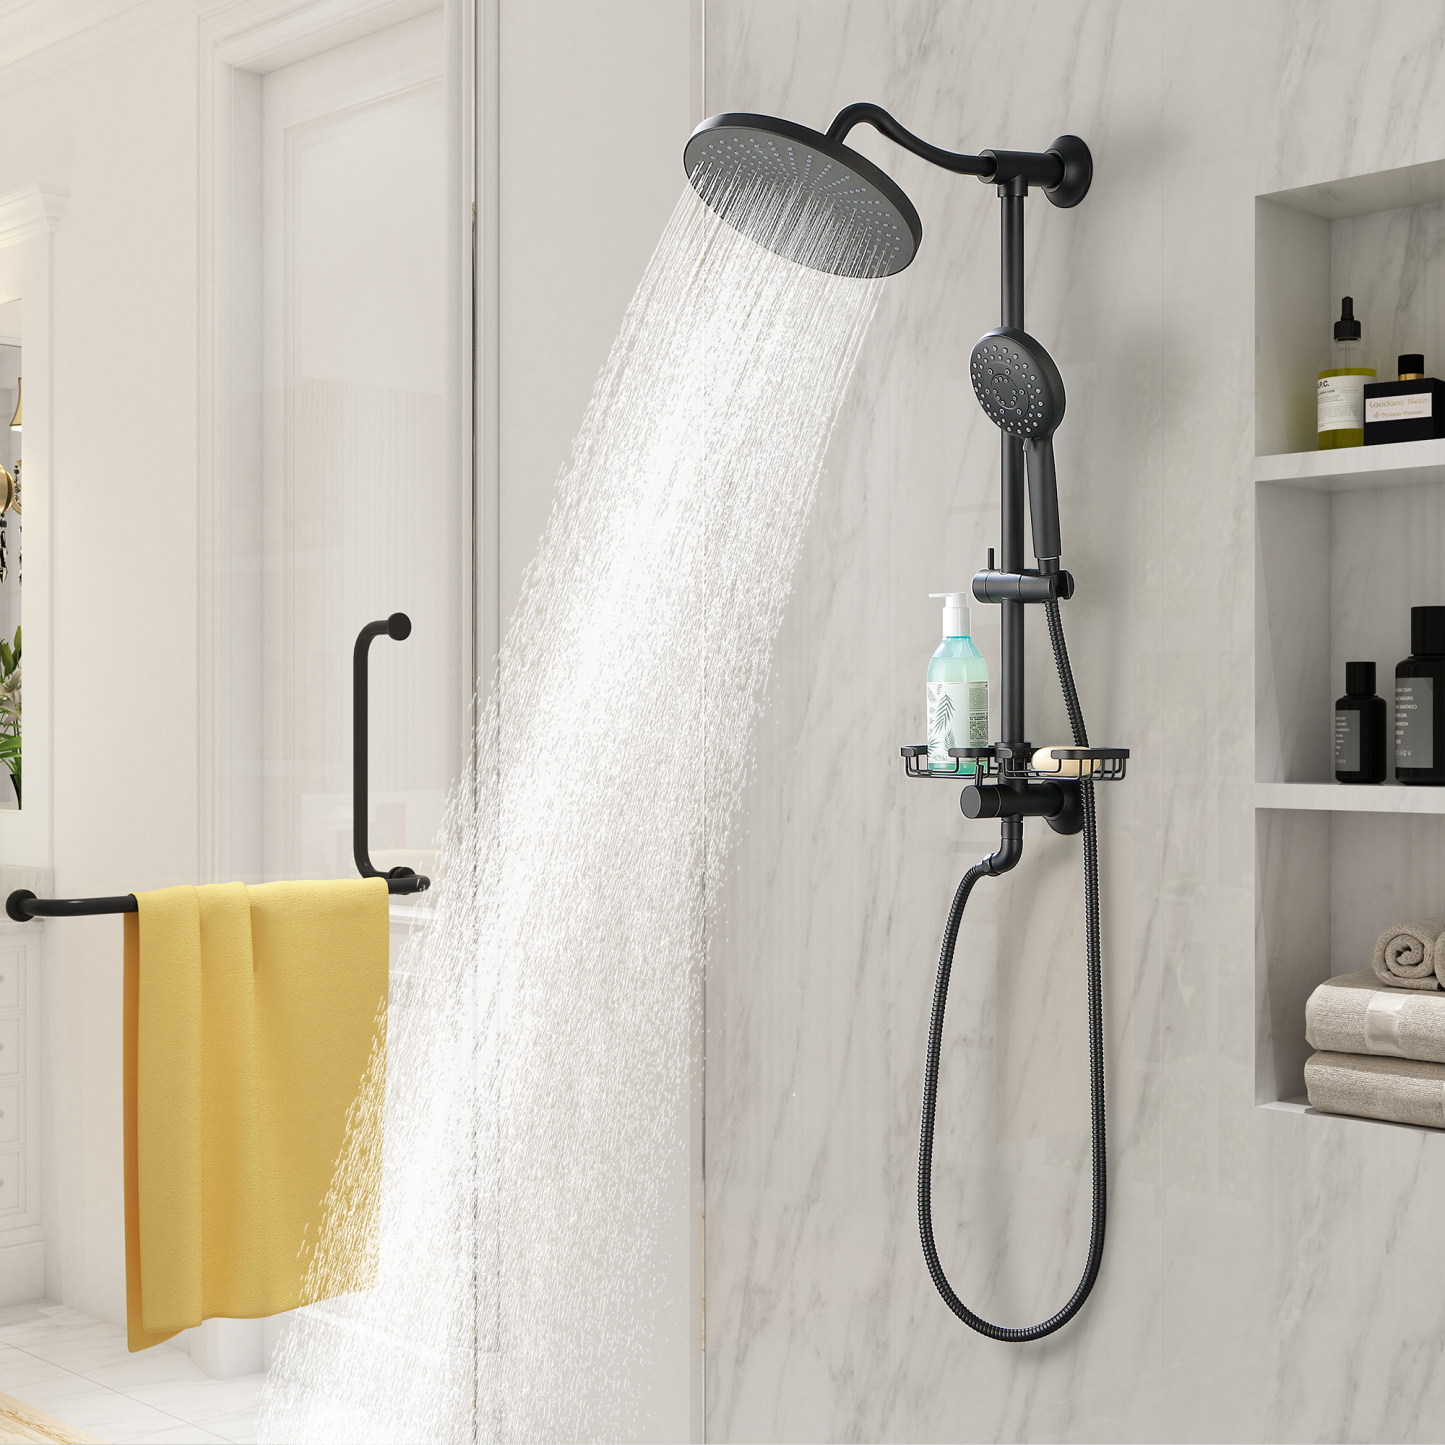 Mondawe ShowerSpas Shower System, with 10" Rain Showerhead, 4-Function Hand Shower, Adjustable Slide Bar and Soap Dish, Matte Black Finish-Mondawe